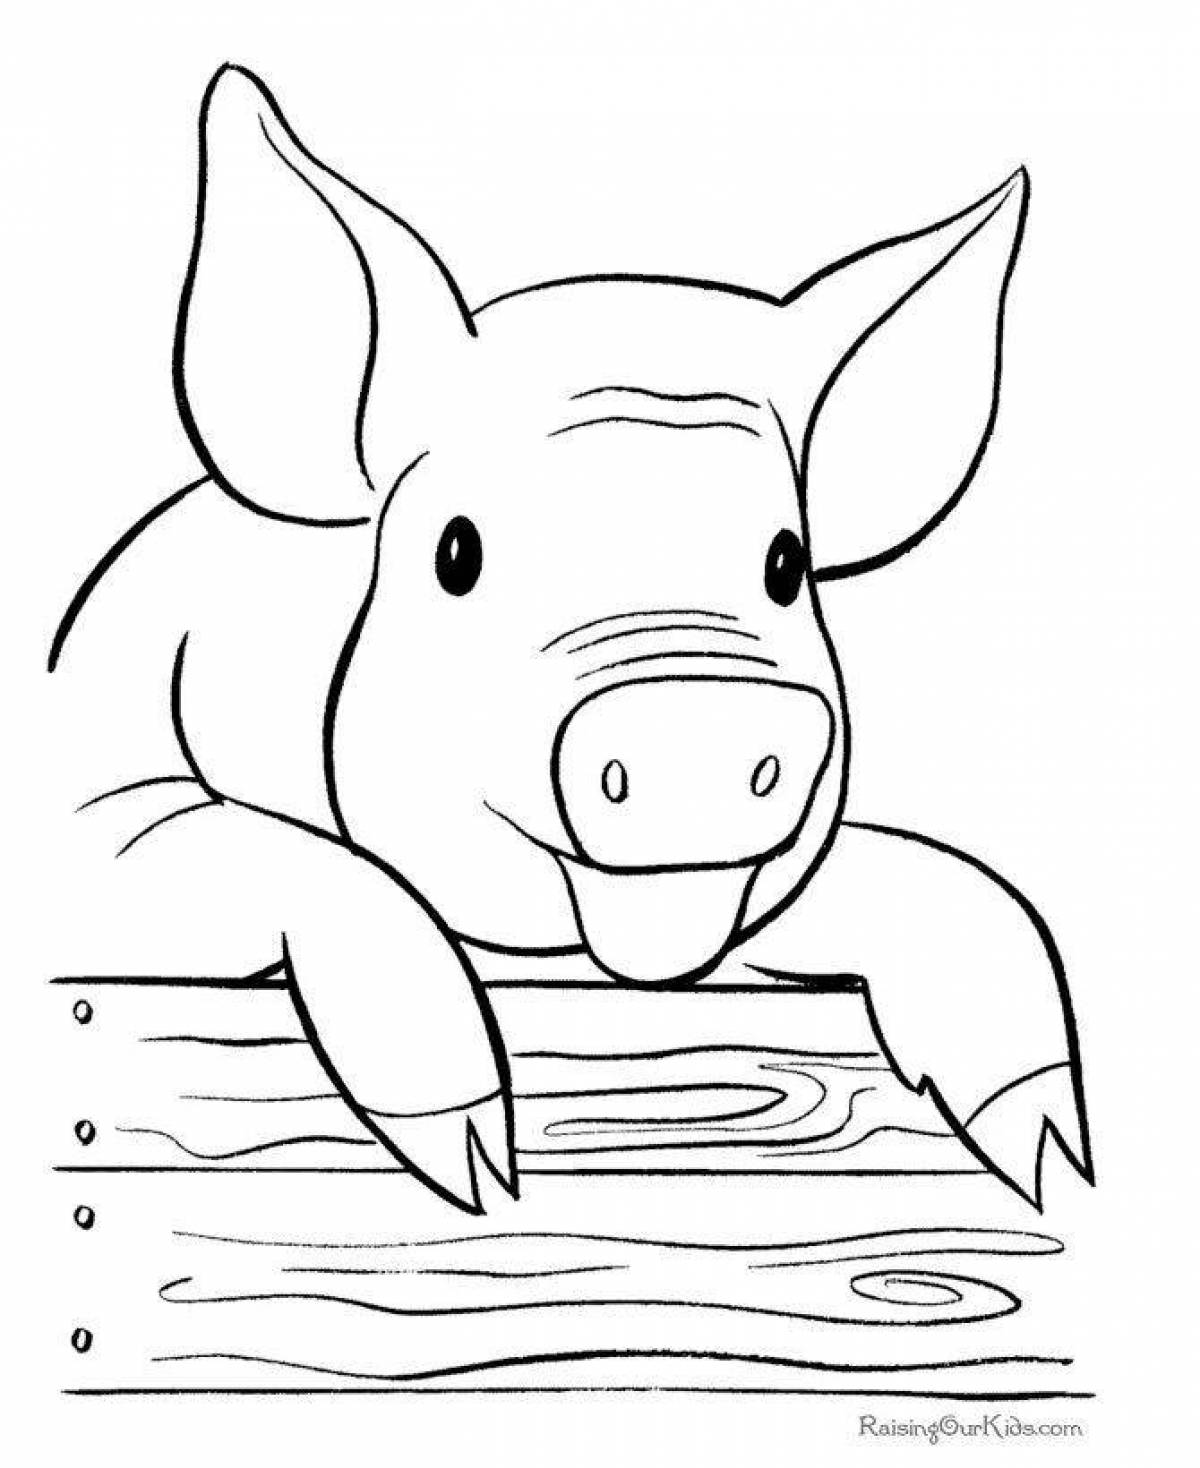 Joyful pig coloring for kids